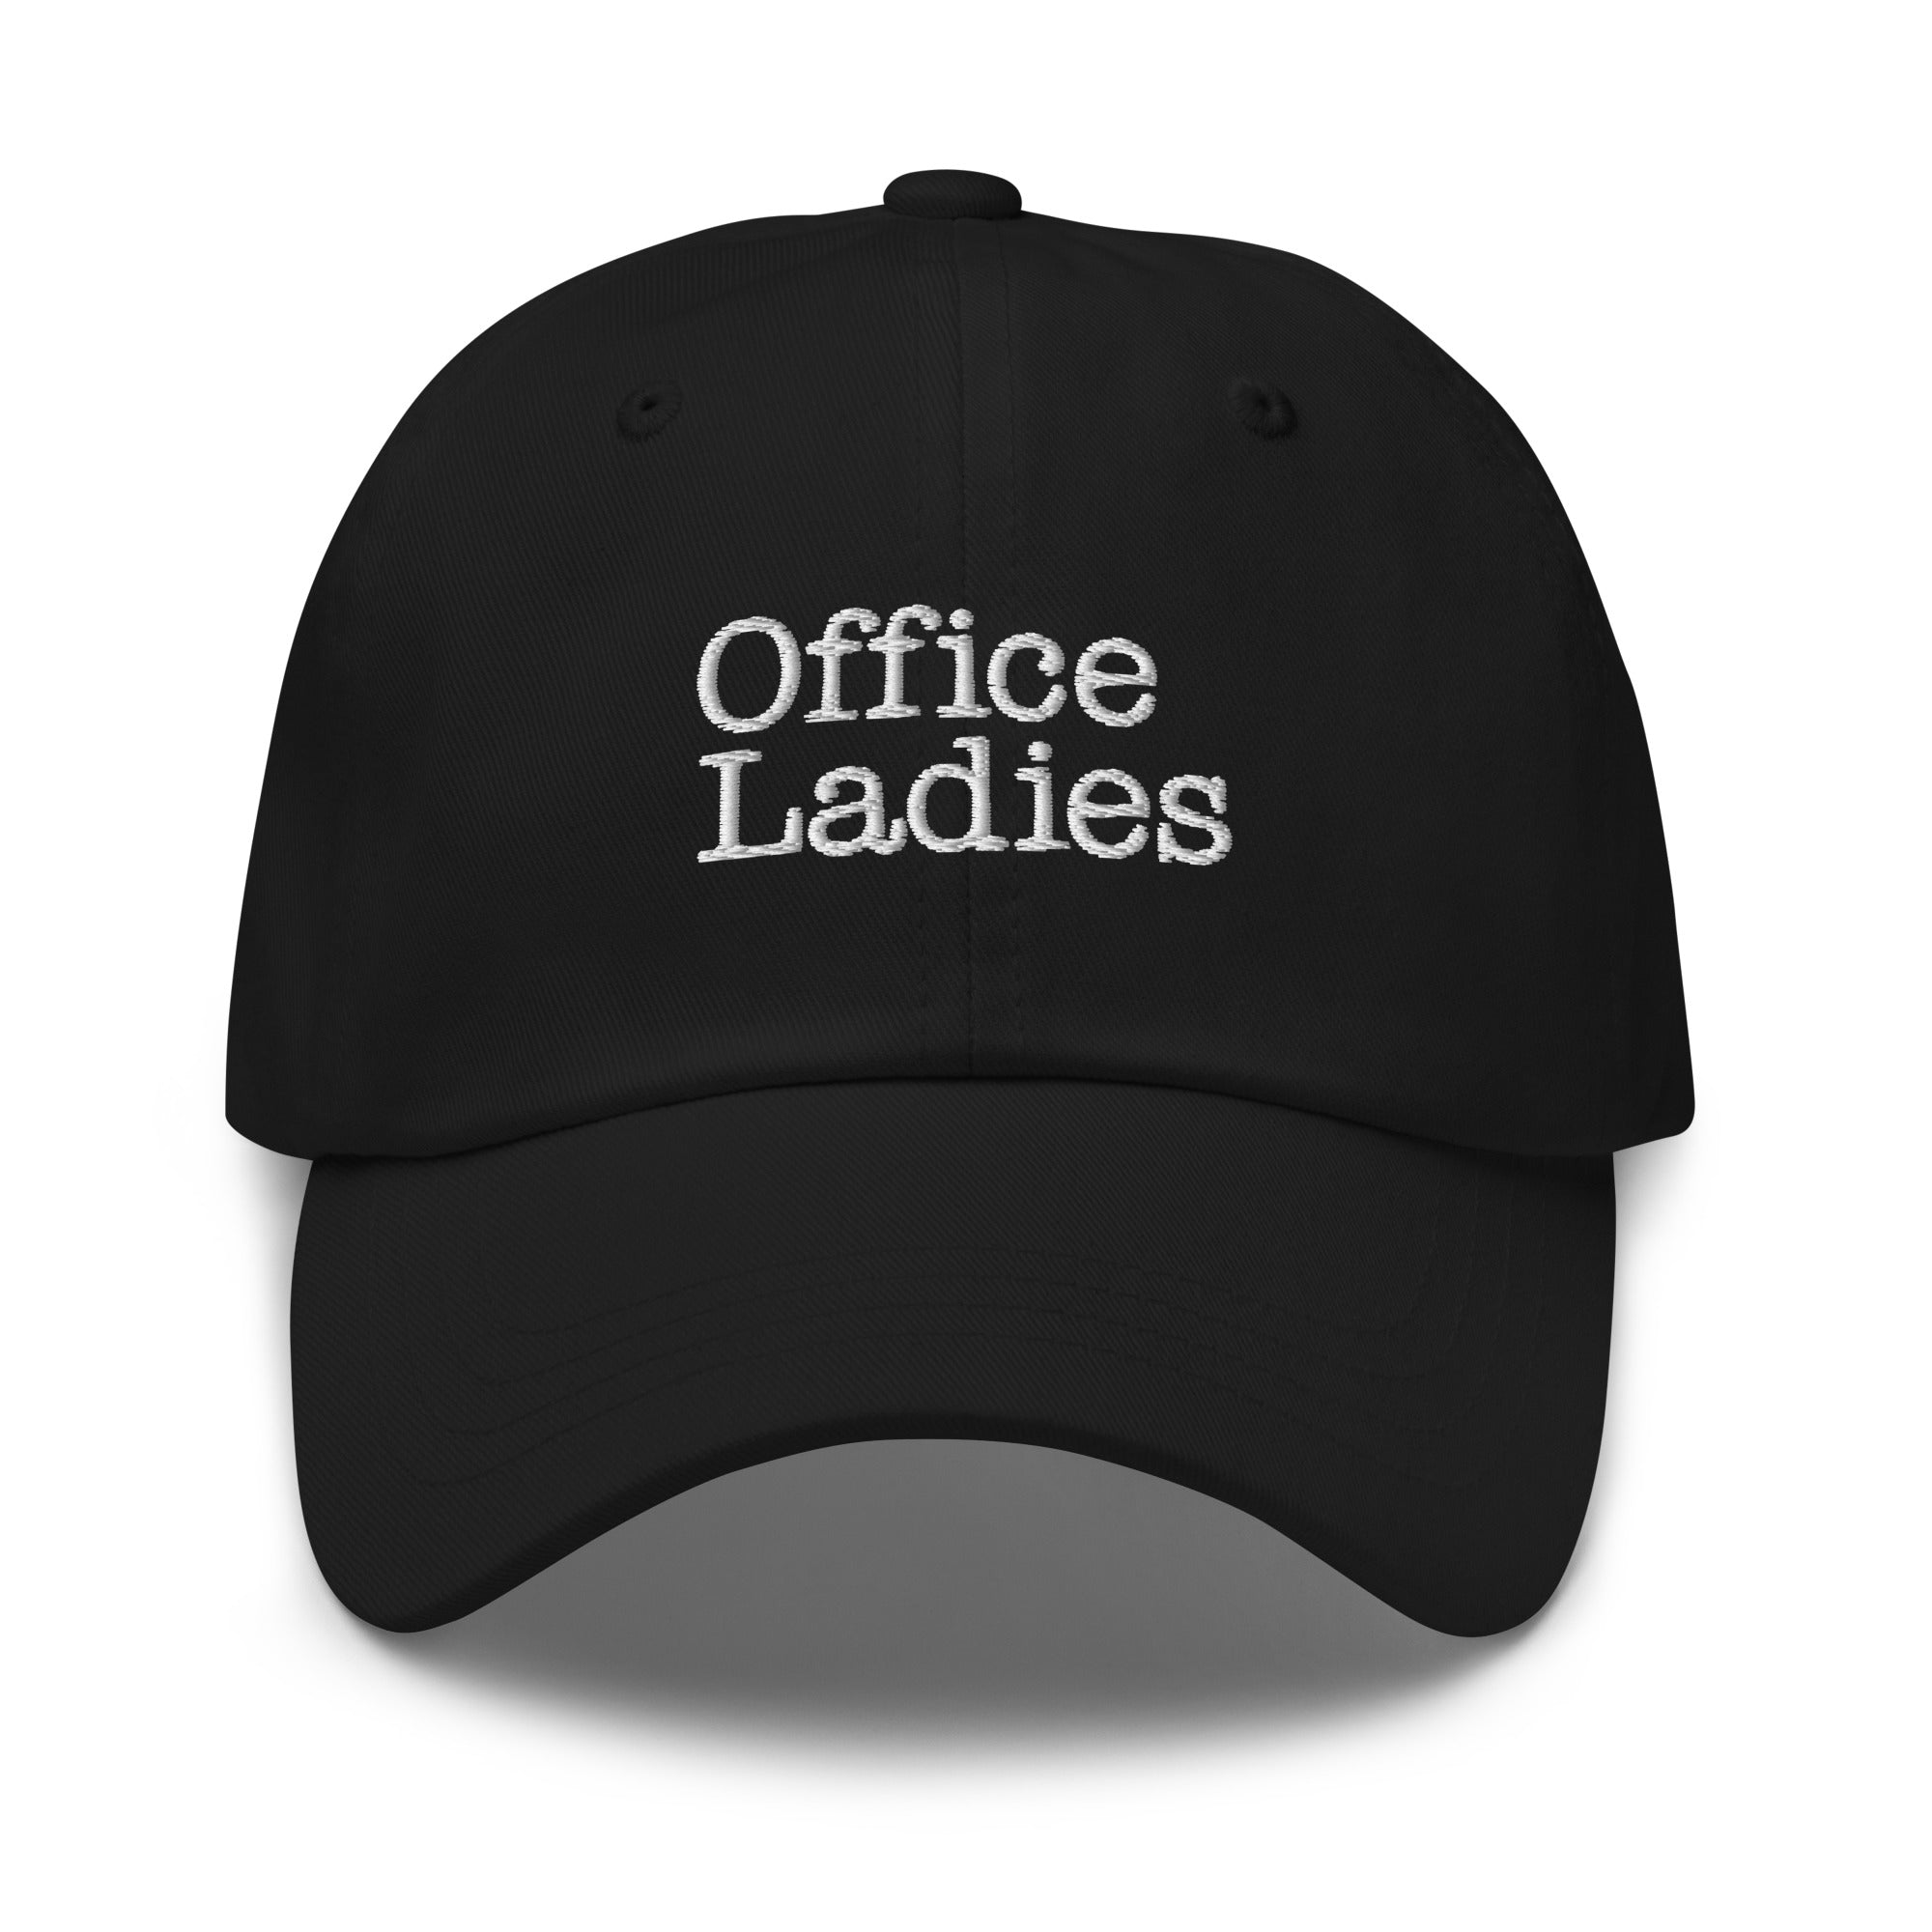 Office Ladies: Cap